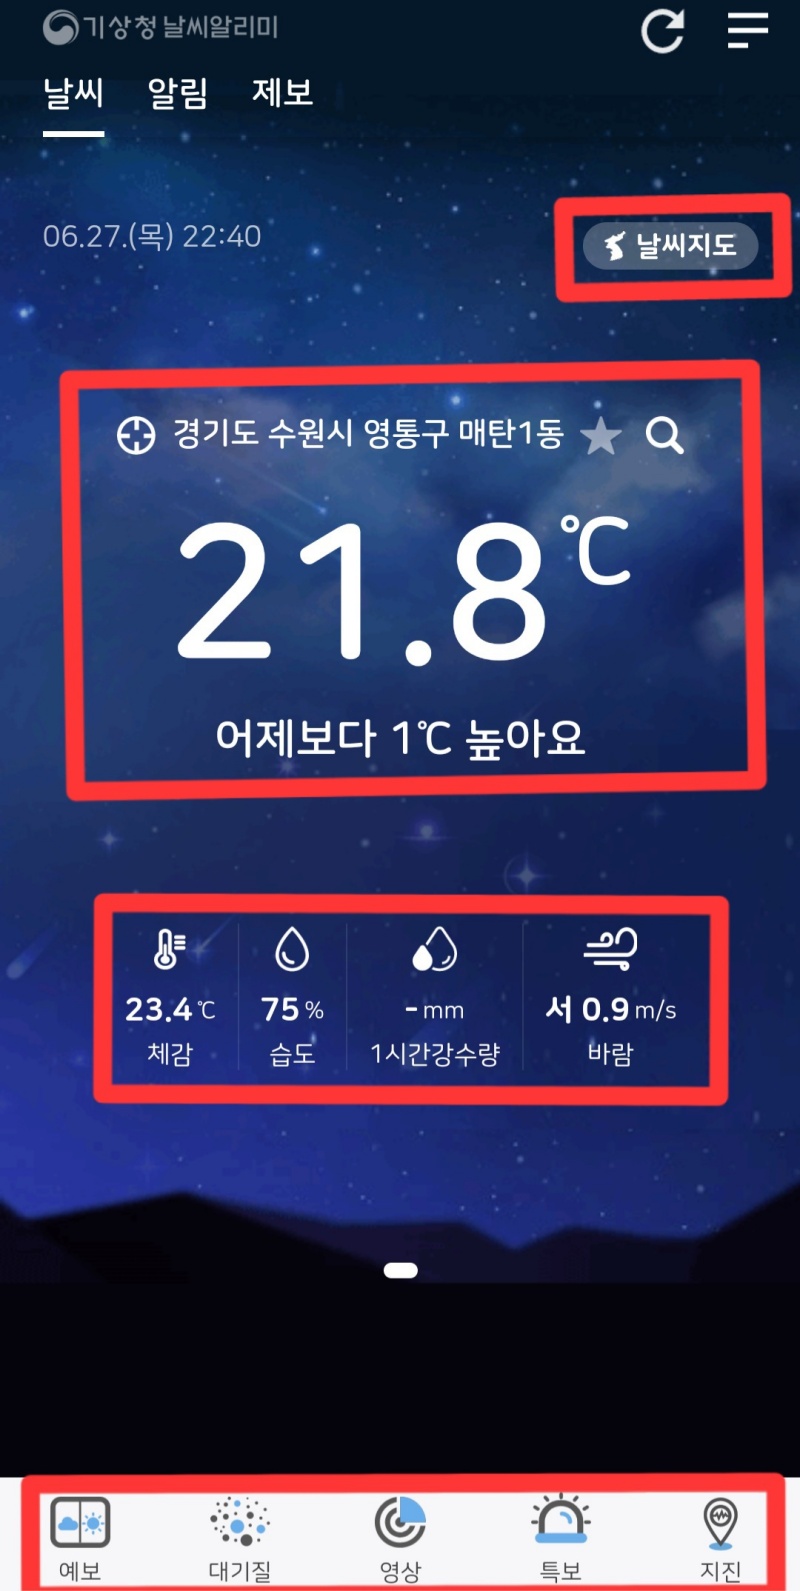 ‘날씨 알리미’ 앱 화면.